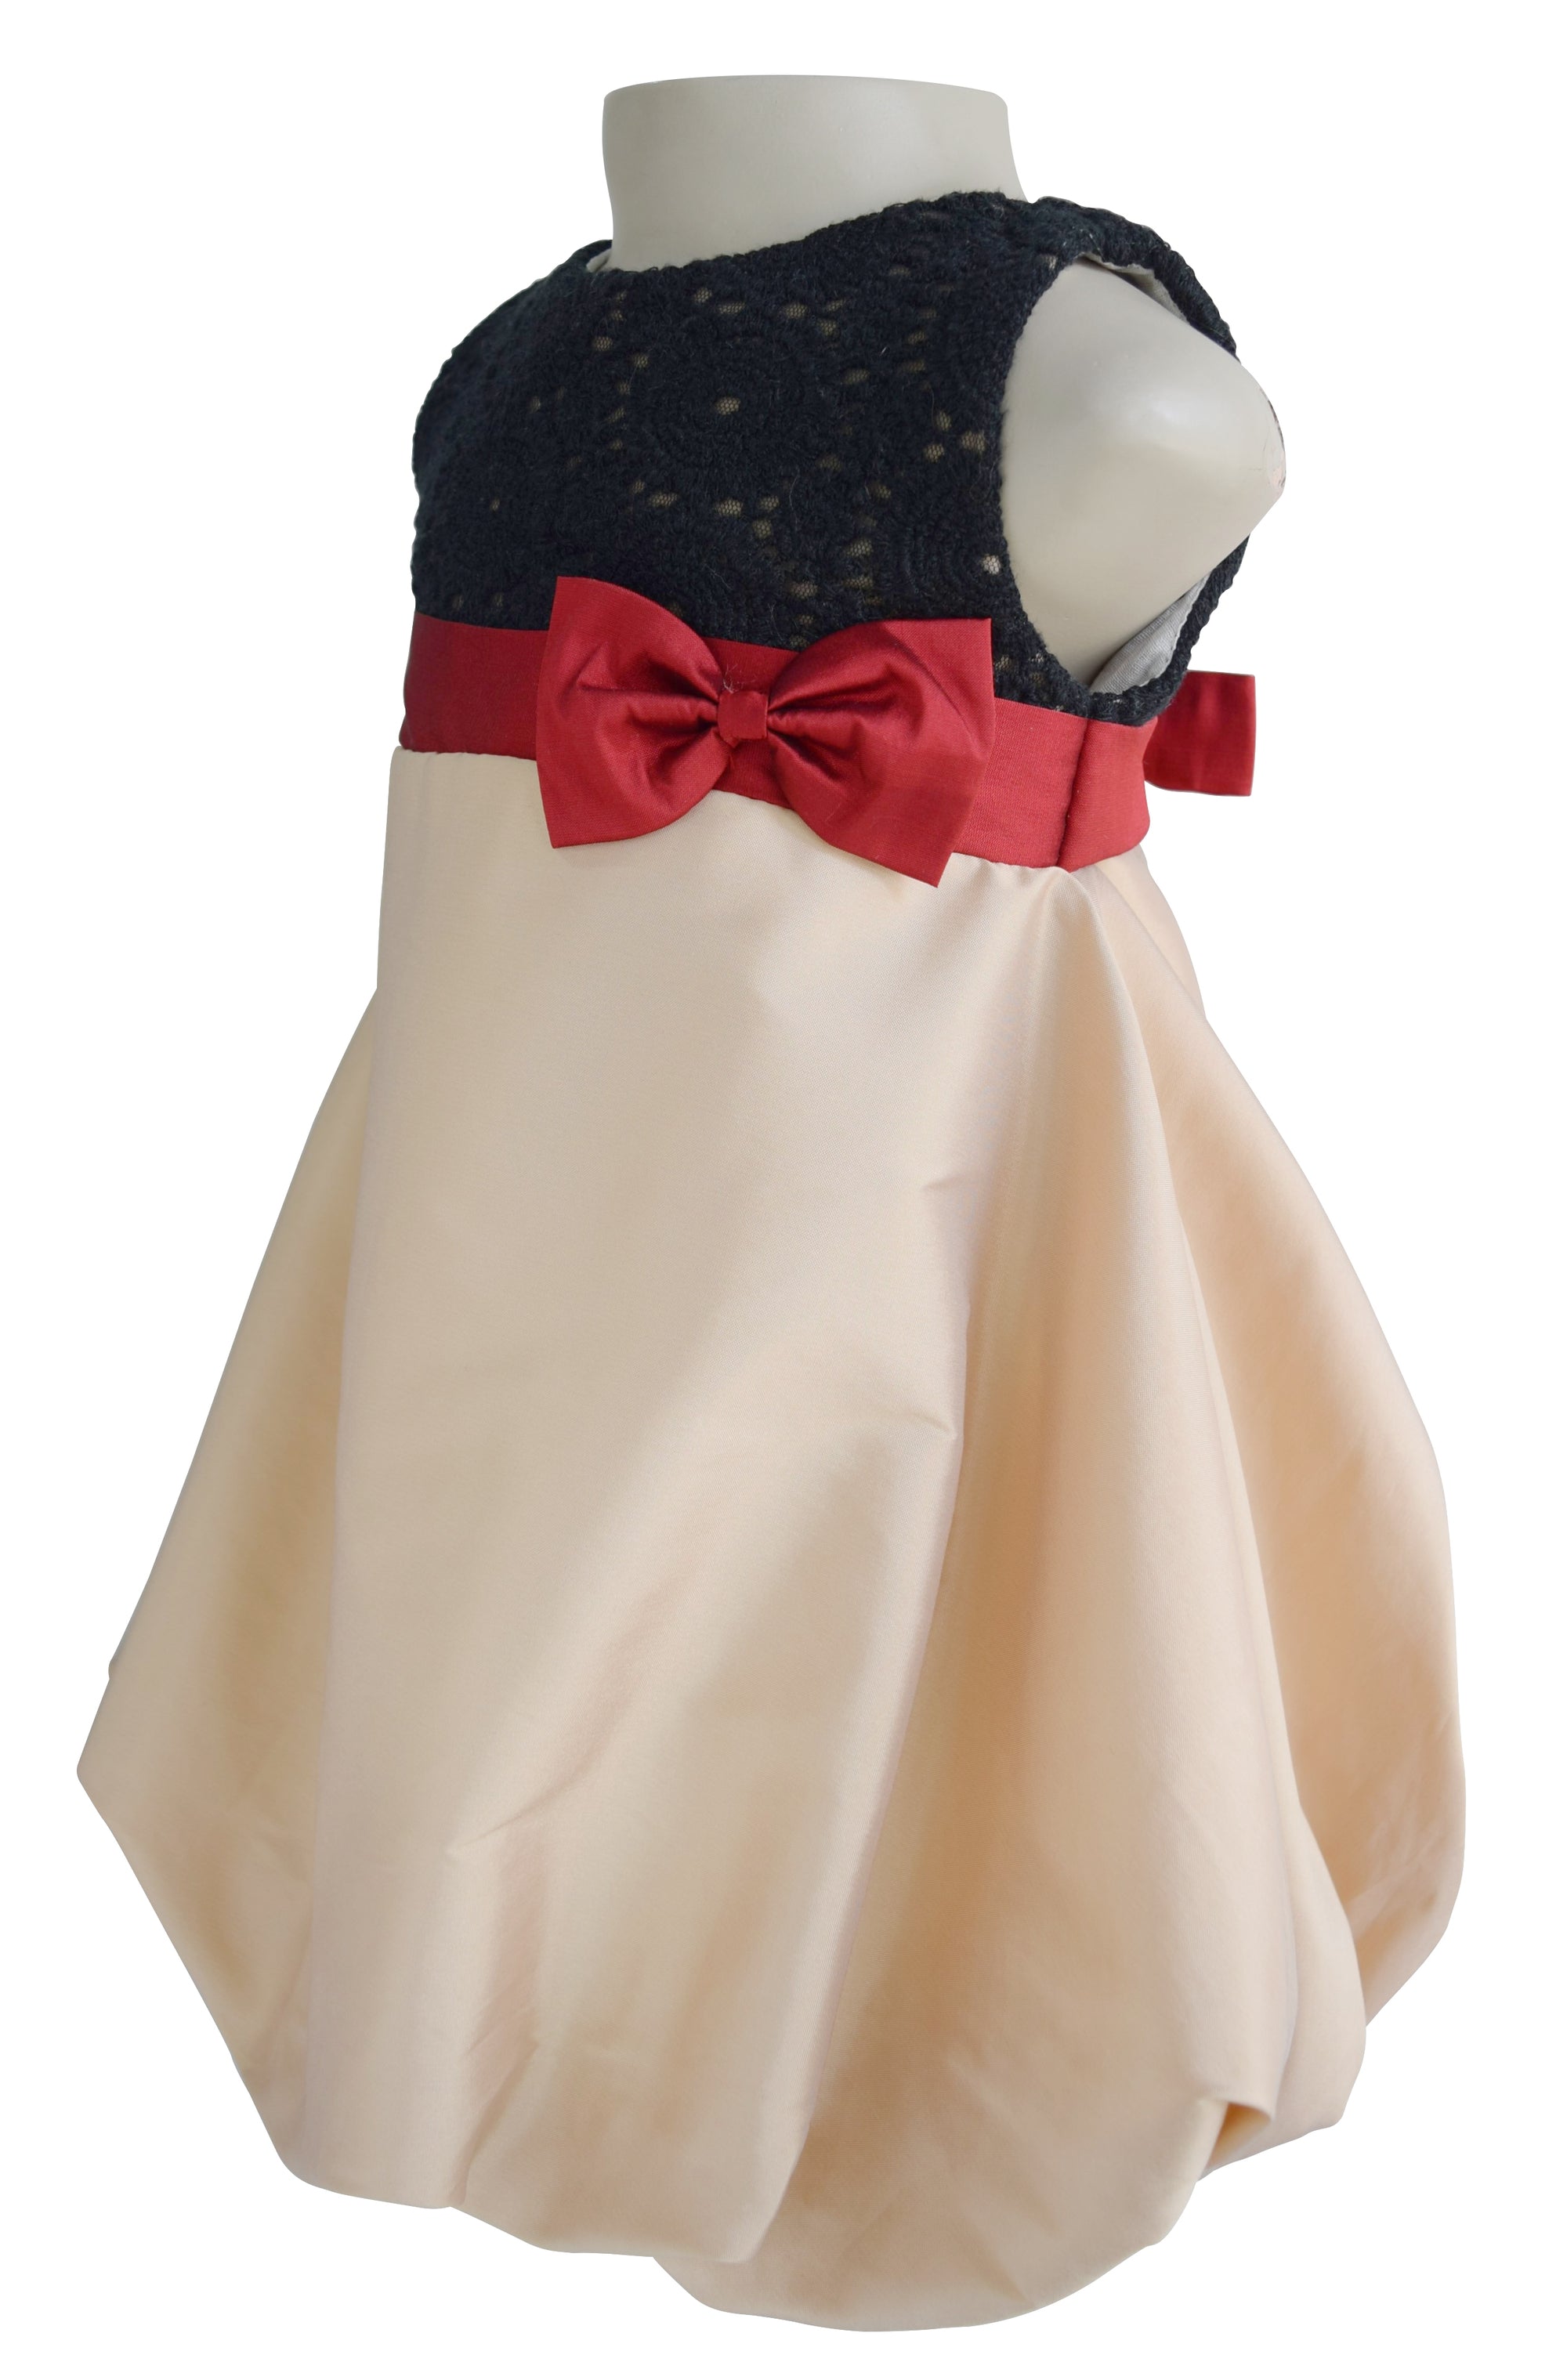 Birthday dress_Faye Black Lace & Champagne Dress